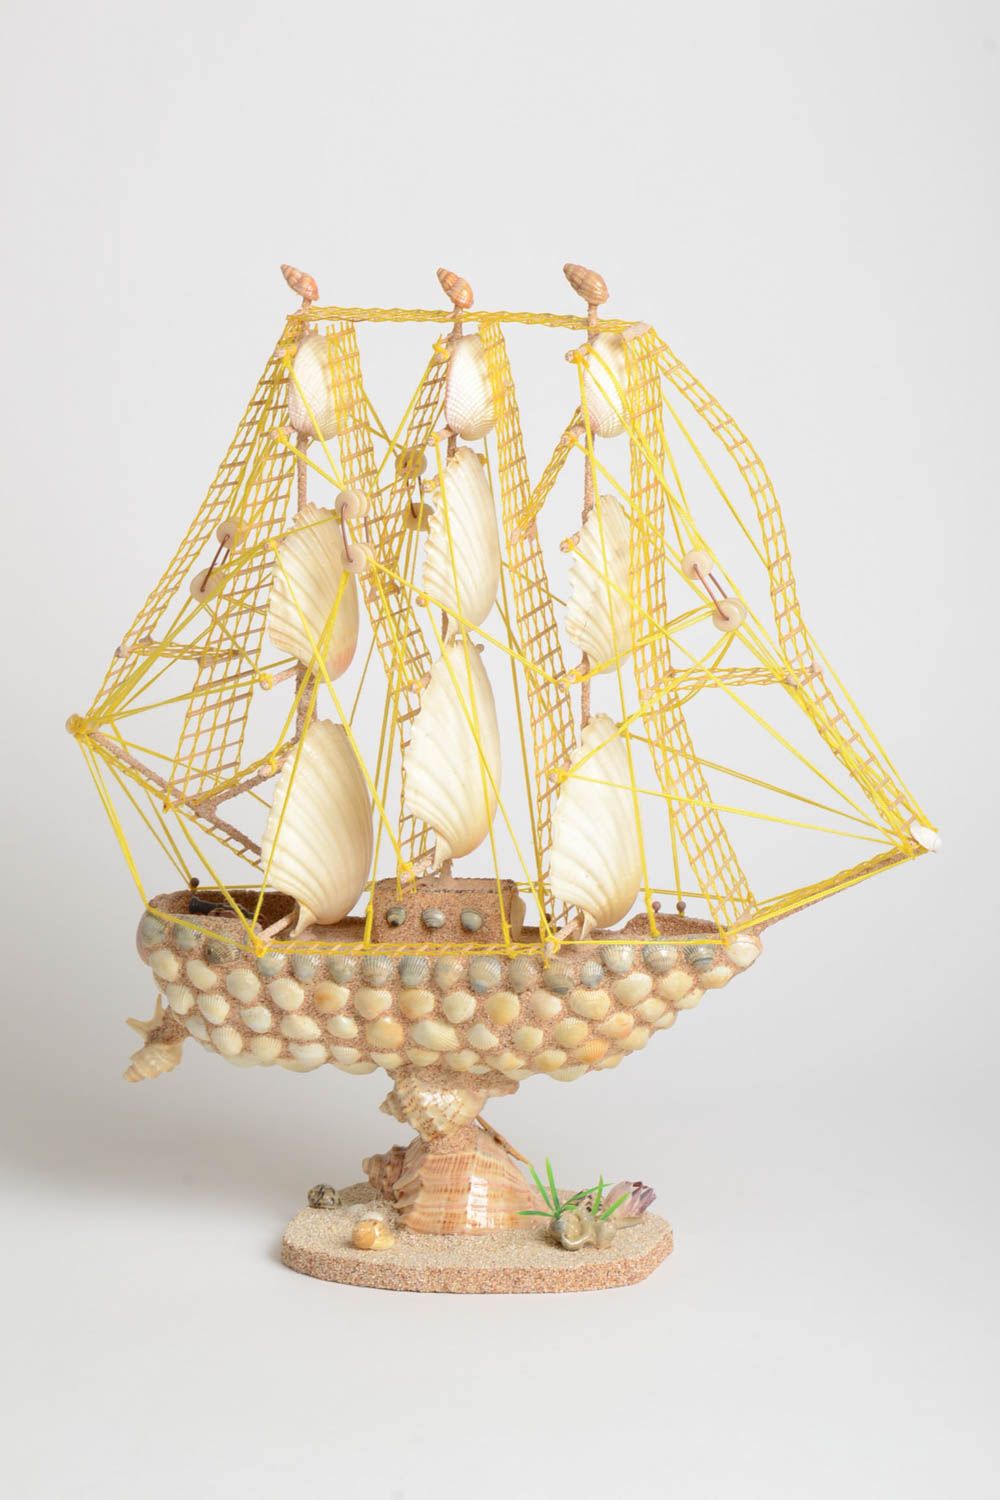 Handmade ship decor ideas gift for men home decor unusual souvenir model ship photo 2